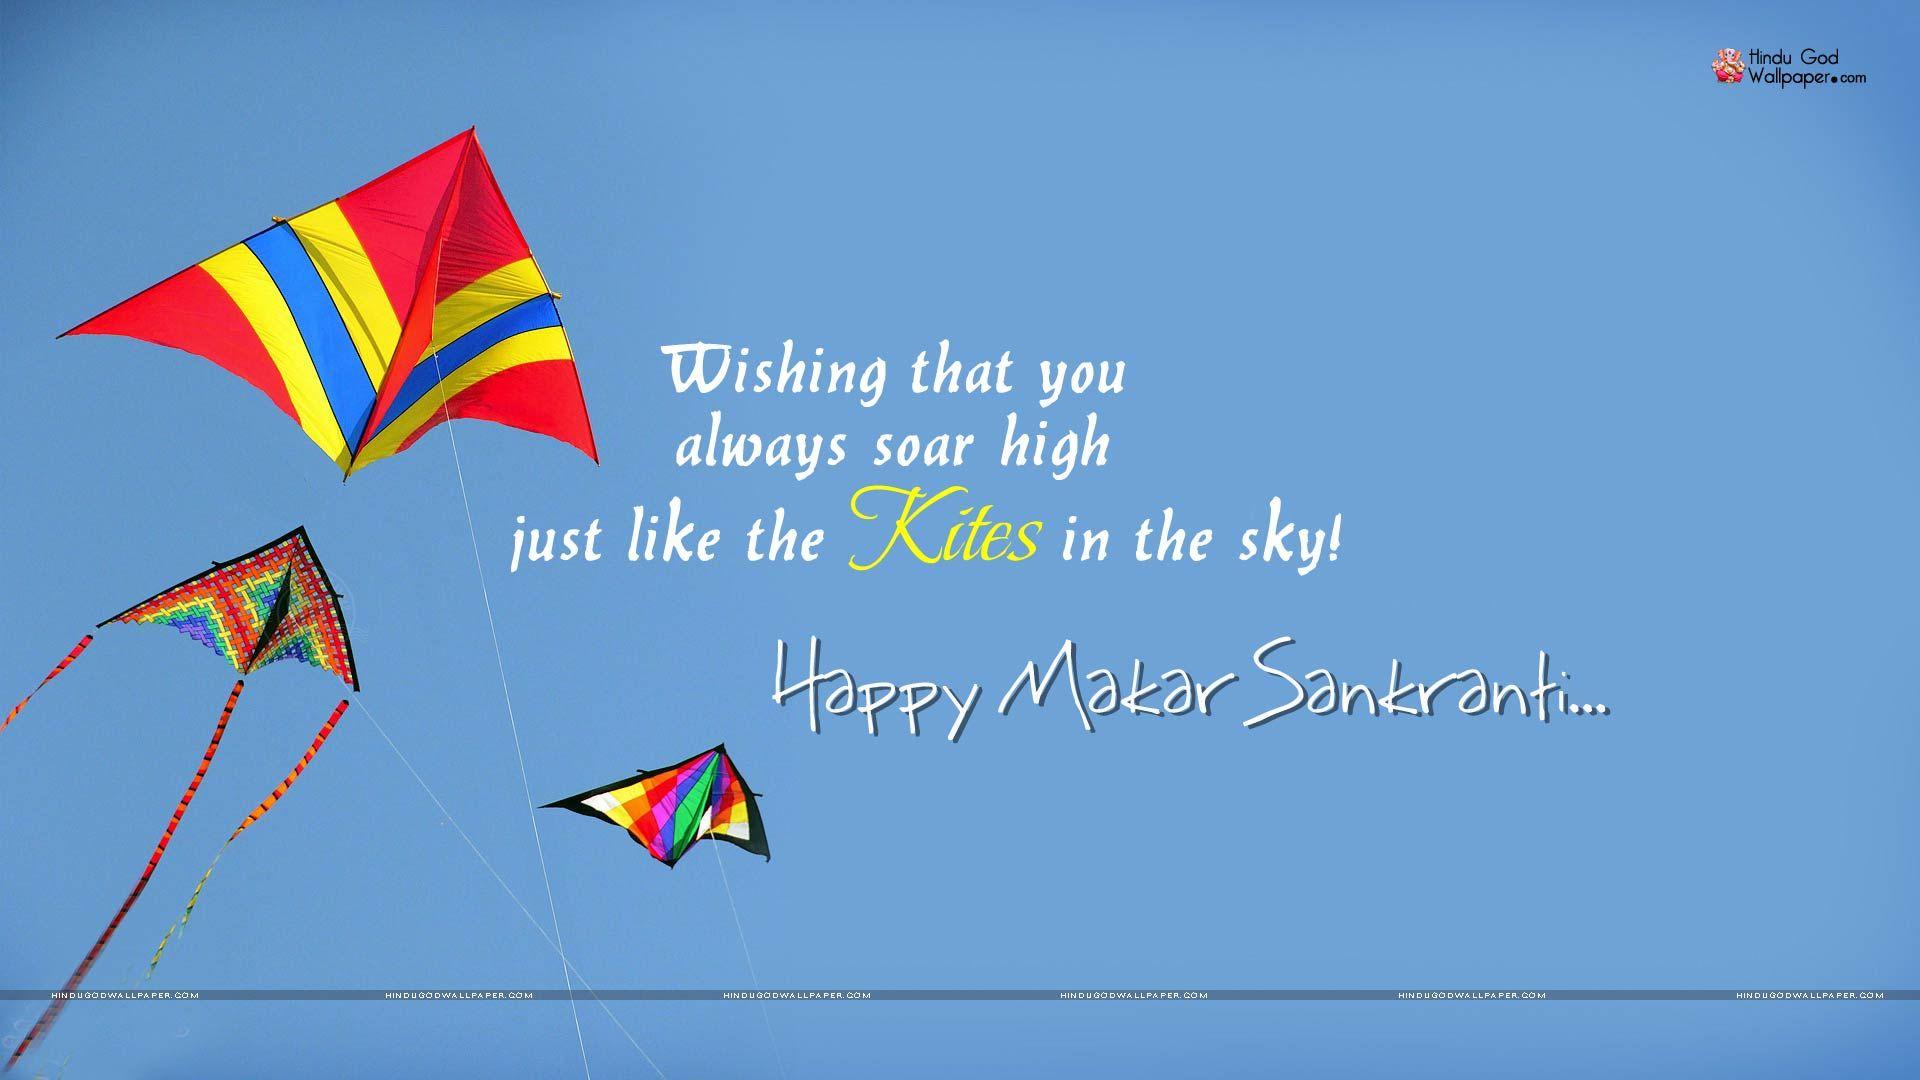 Happy Makar Sankranti Wallpaper Images Free Download